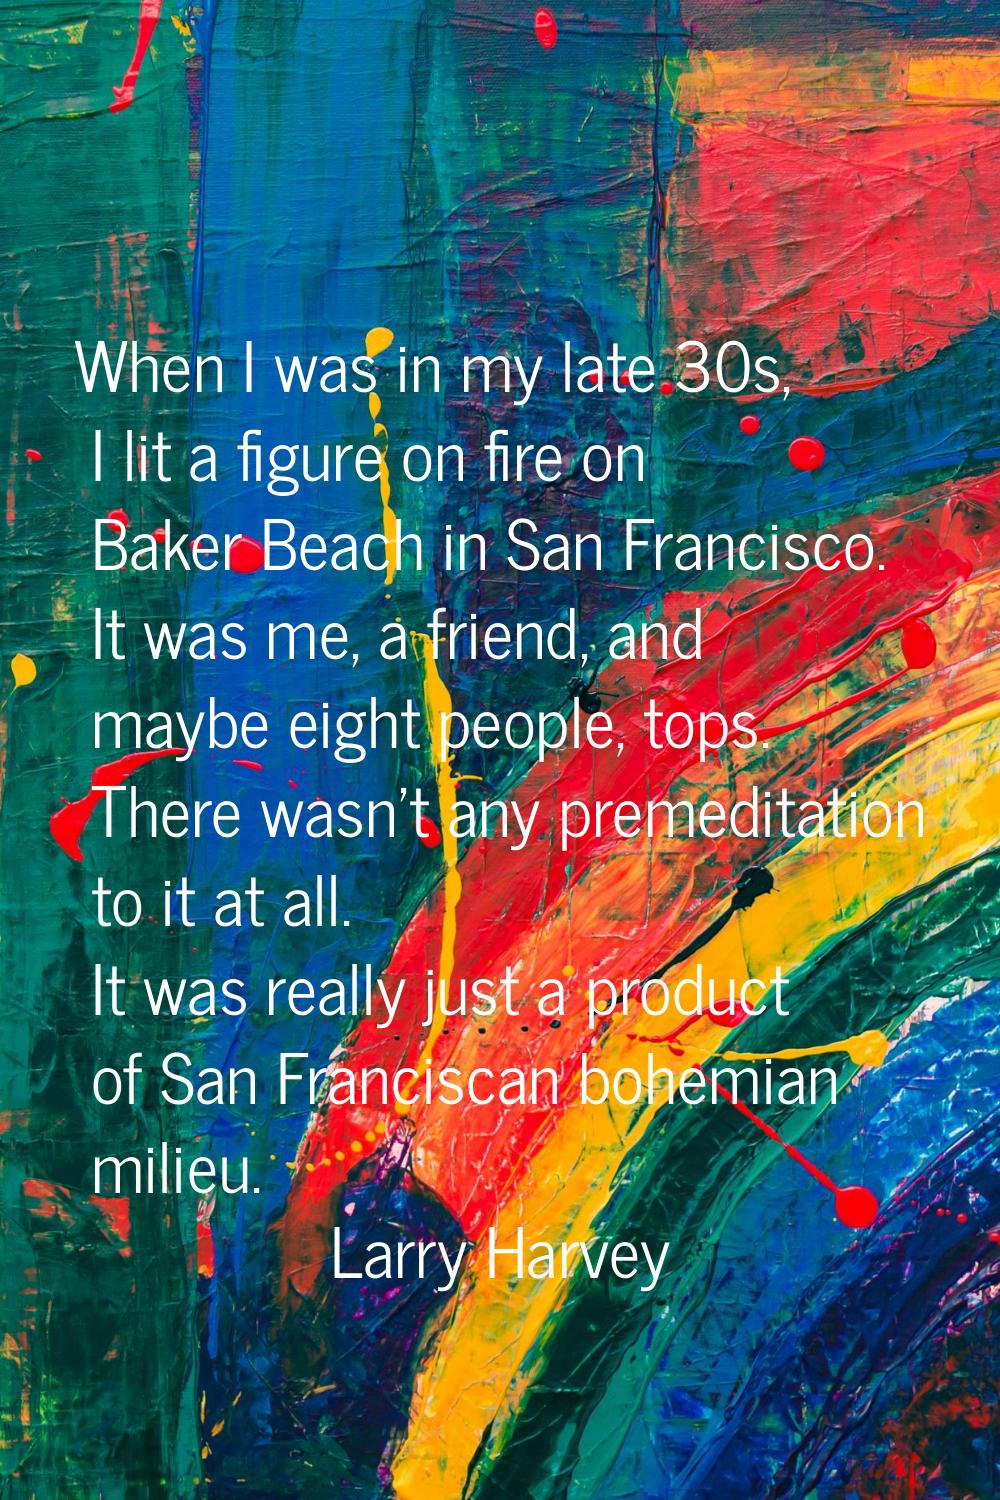 When I was in my late 30s, I lit a figure on fire on Baker Beach in San Francisco. It was me, a fri